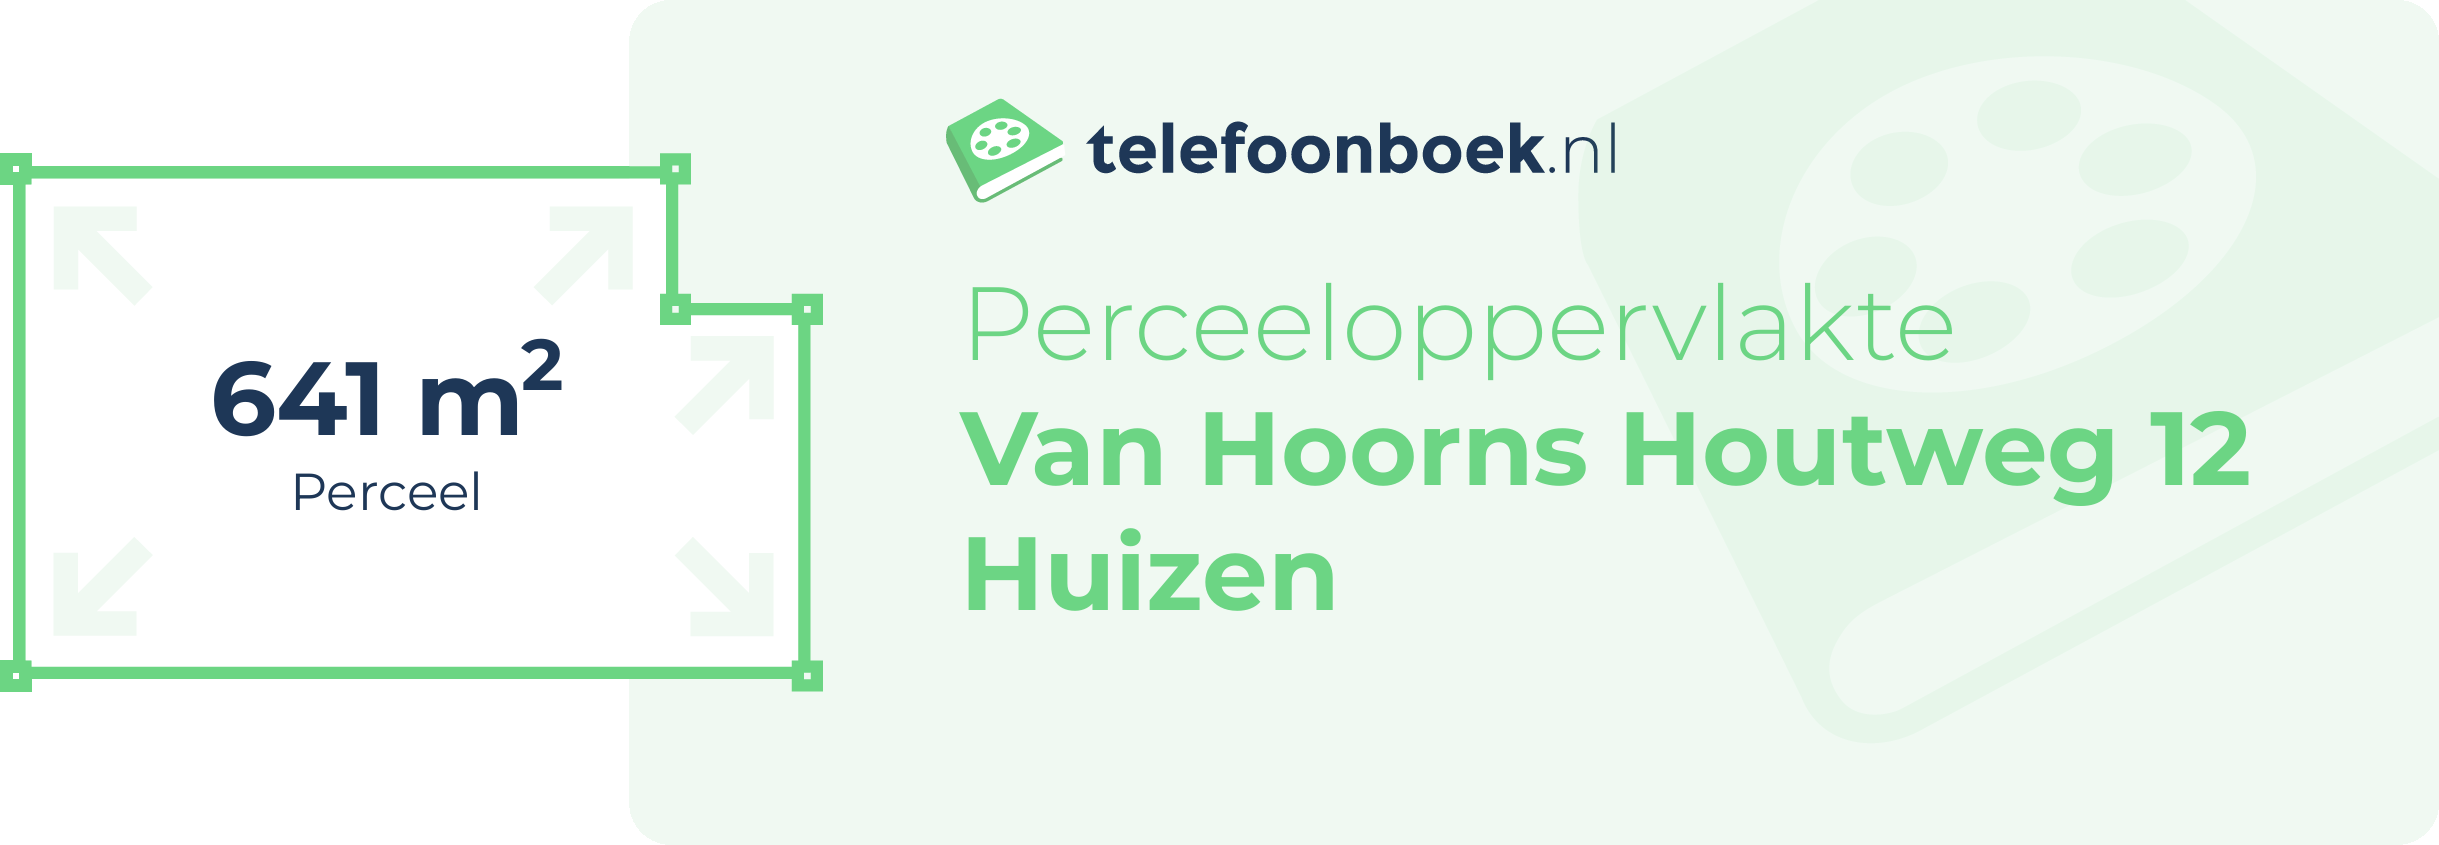 Perceeloppervlakte Van Hoorns Houtweg 12 Huizen